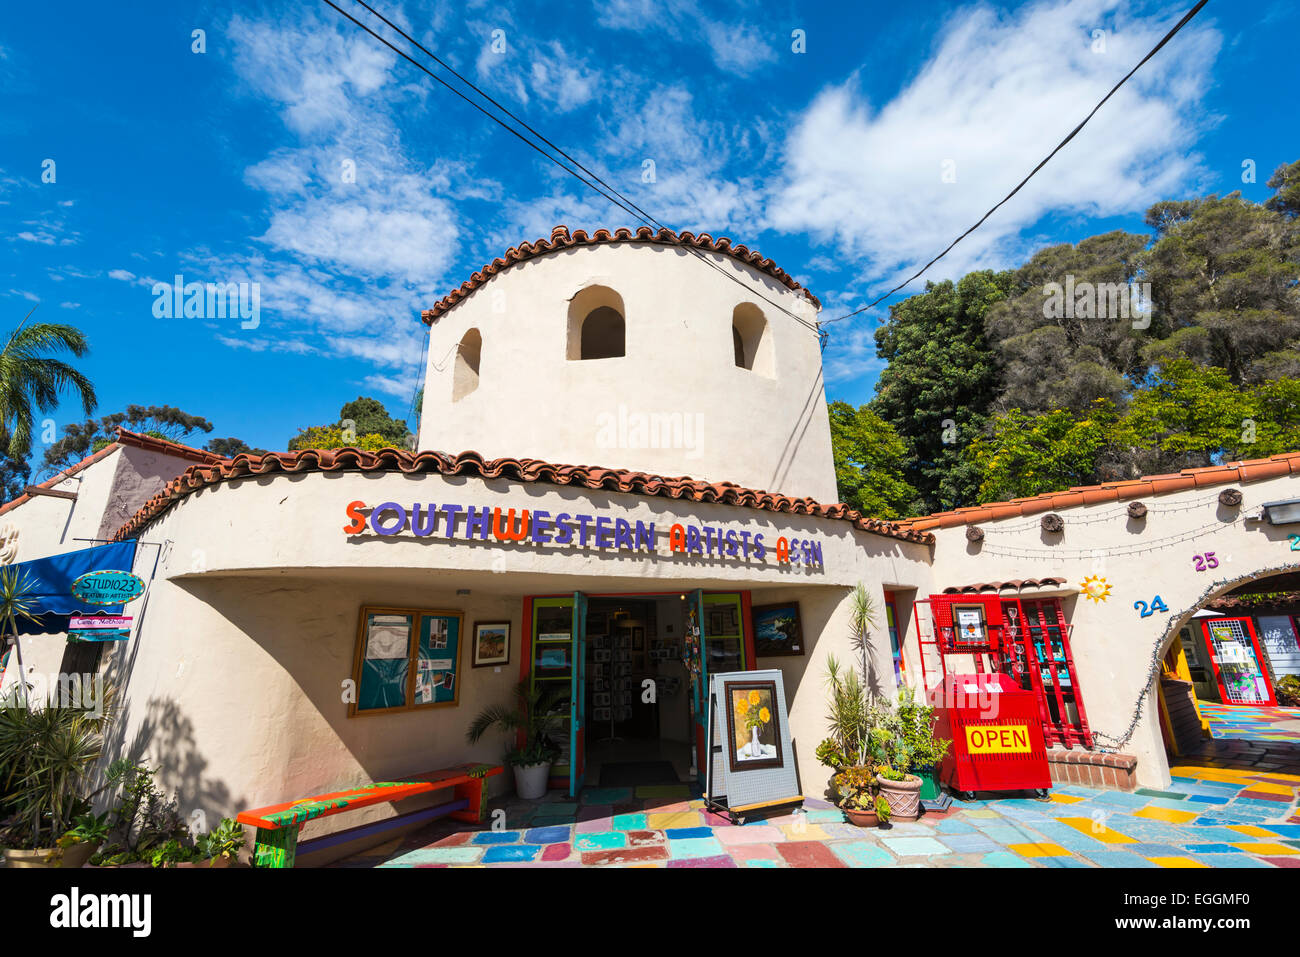 Bunte Gebäude im Zentrum spanischen Dorfes Kunst. Balboa Park, San Diego, Kalifornien, Vereinigte Staaten von Amerika. Stockfoto